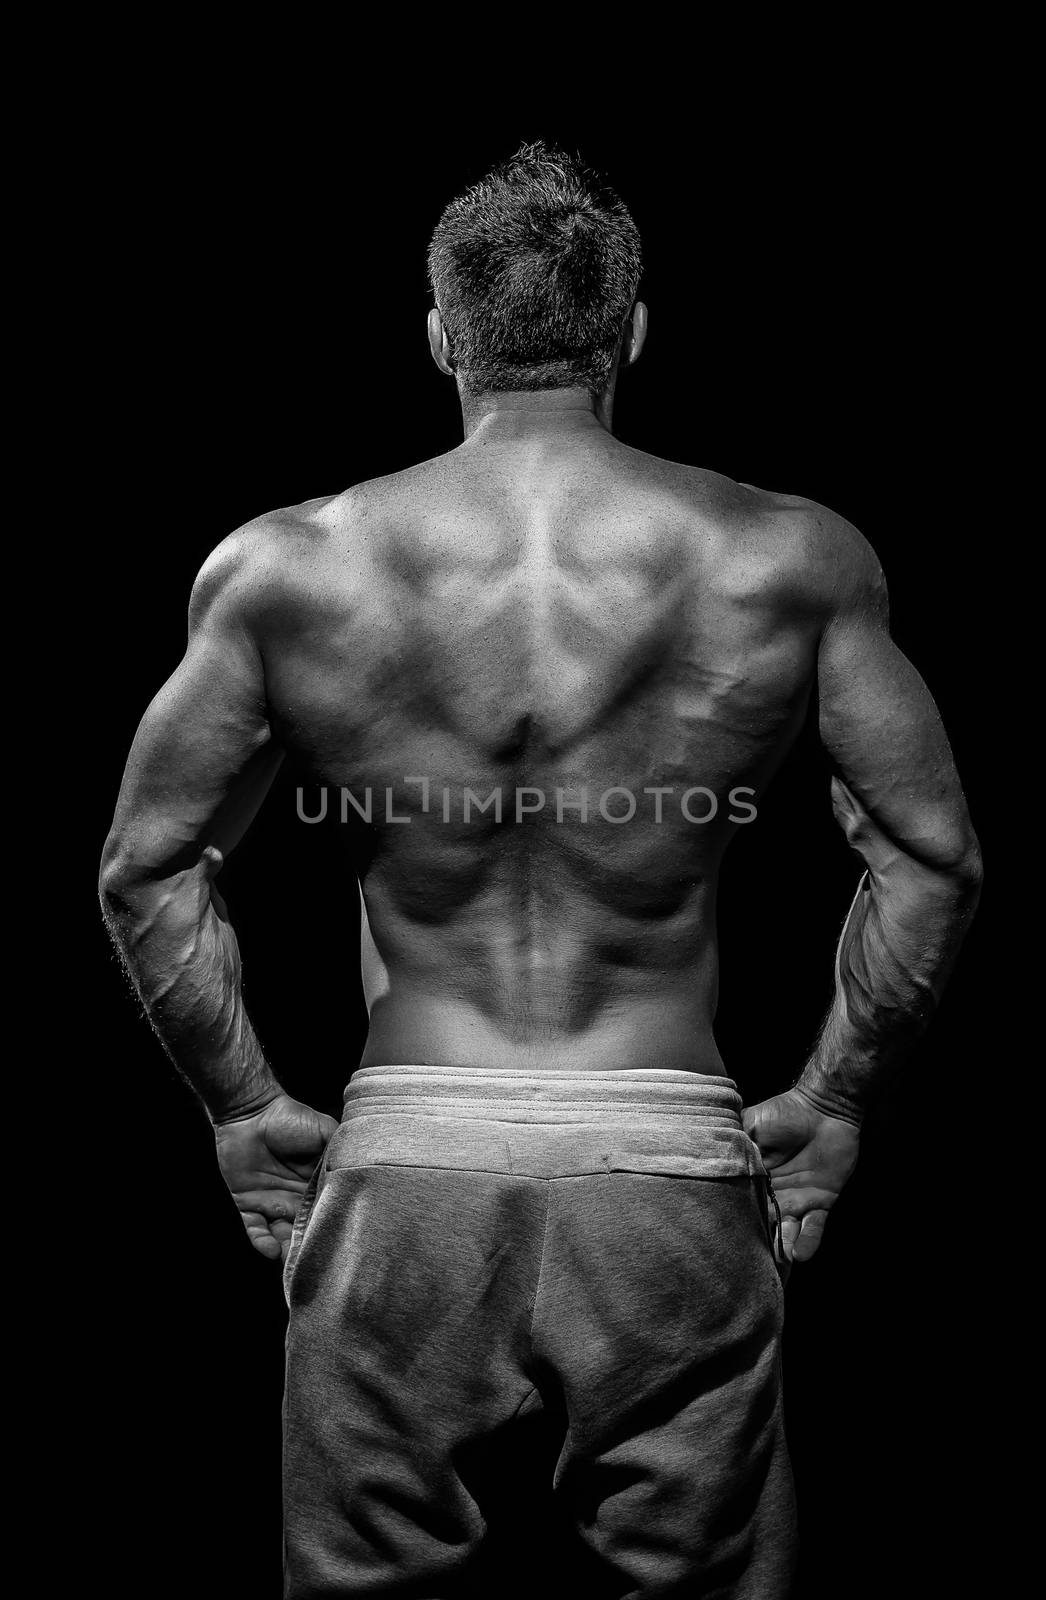 Muscular male model bodybuilder preparing for fitness training, turned back